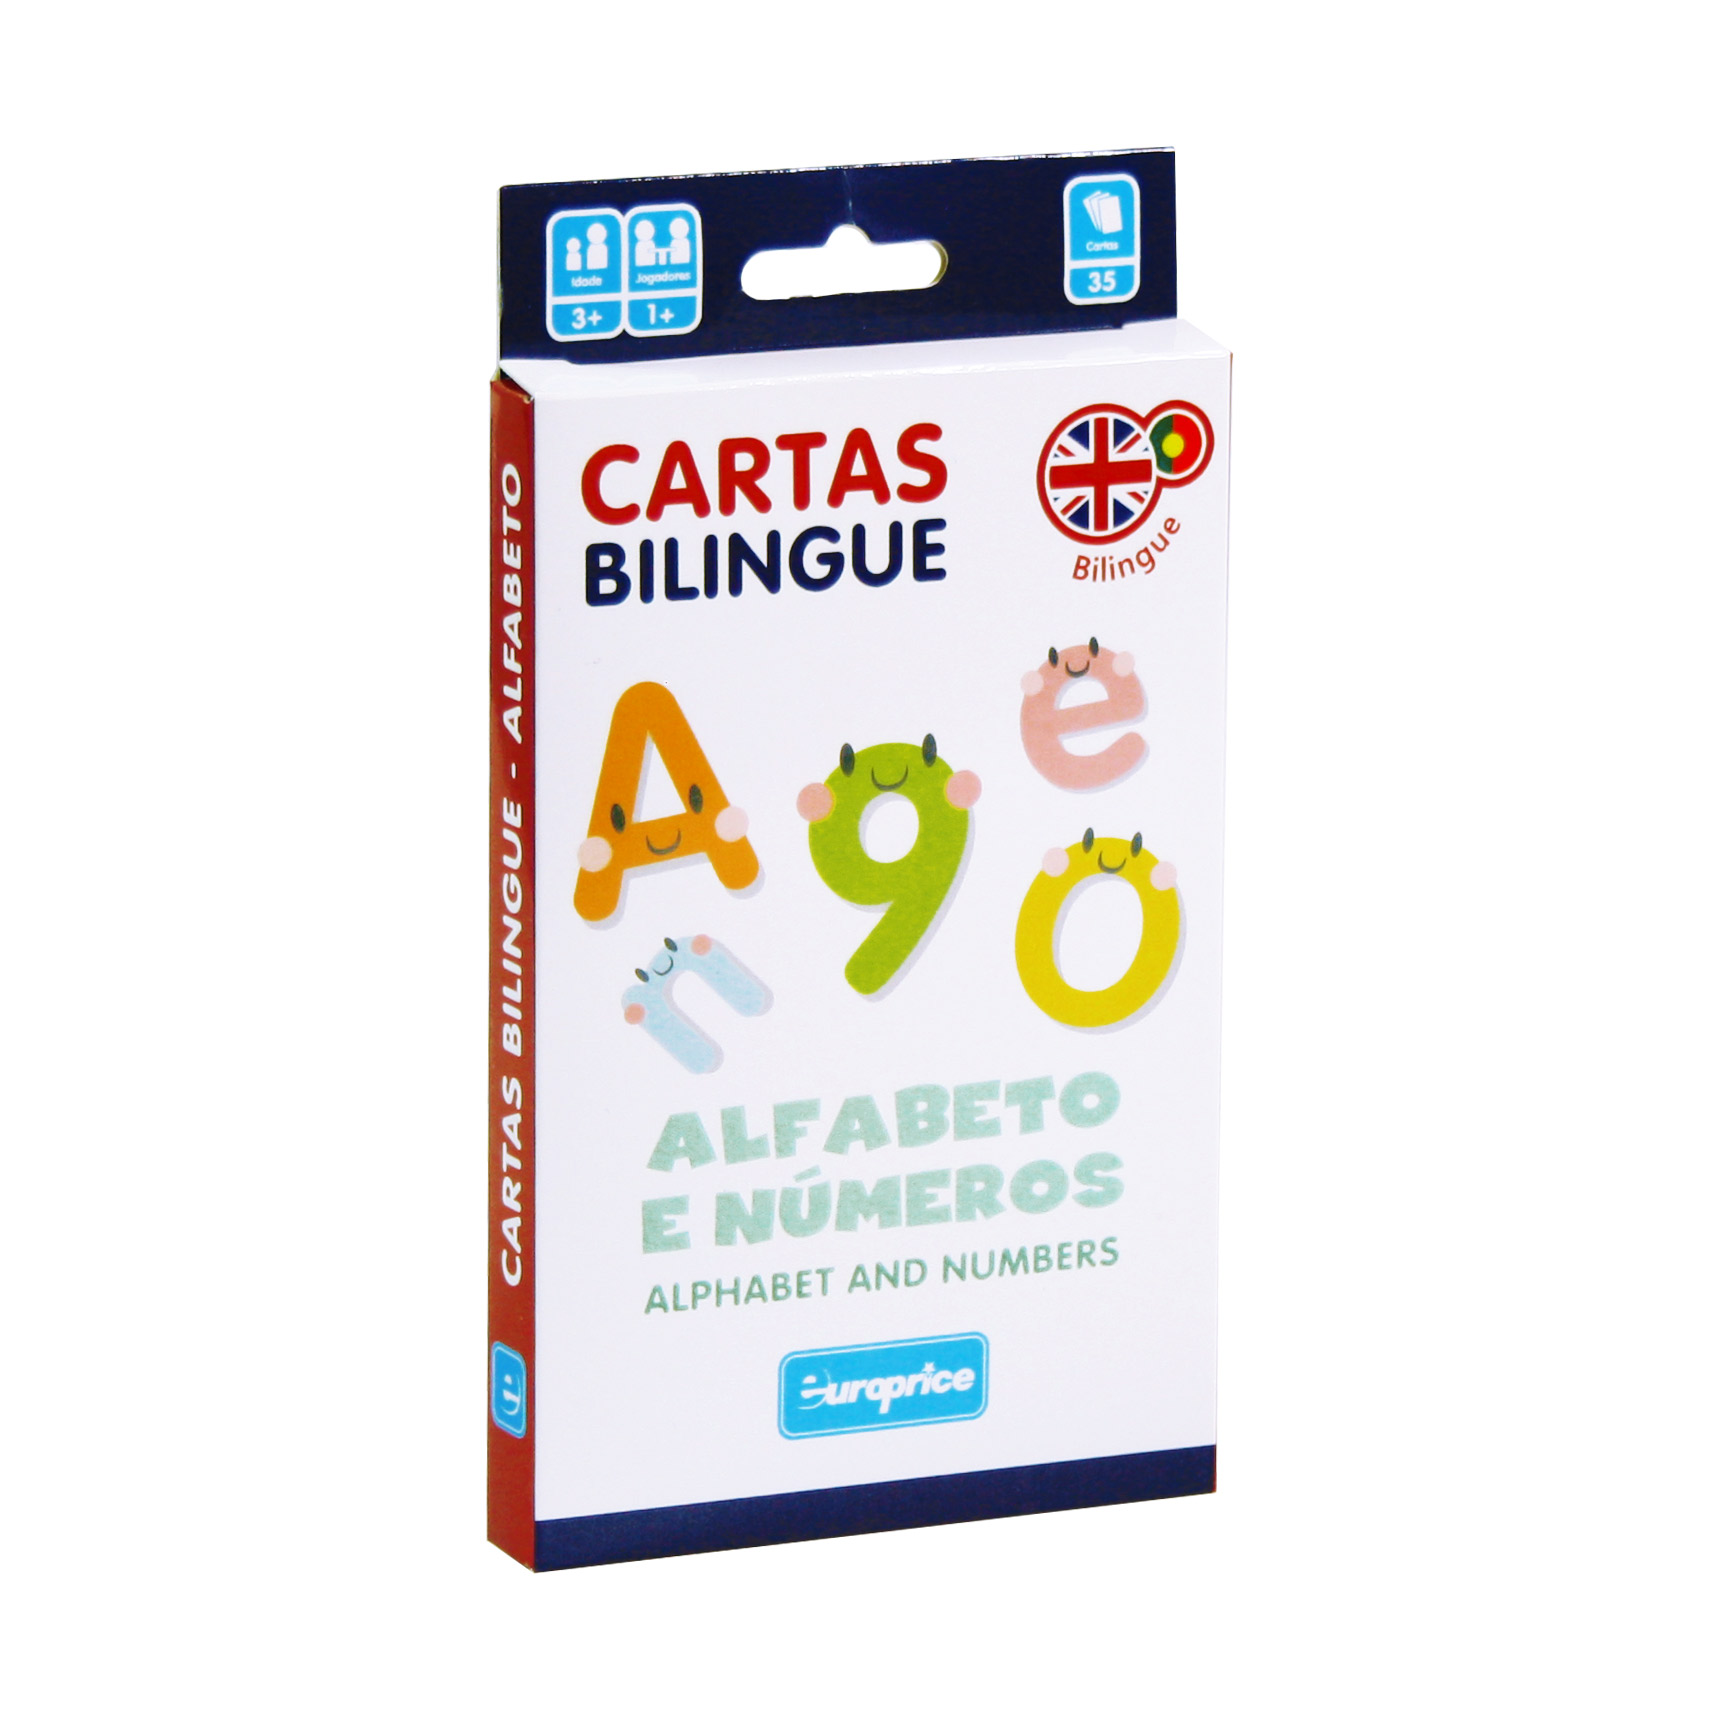 Caixa do jogo Cartas Bilingue - Alfabeto e números. É uma caixa de cartas vertical, em tons de branco, vermelho e azul escuro, com letras e números coloridos, com caras engraçadas.